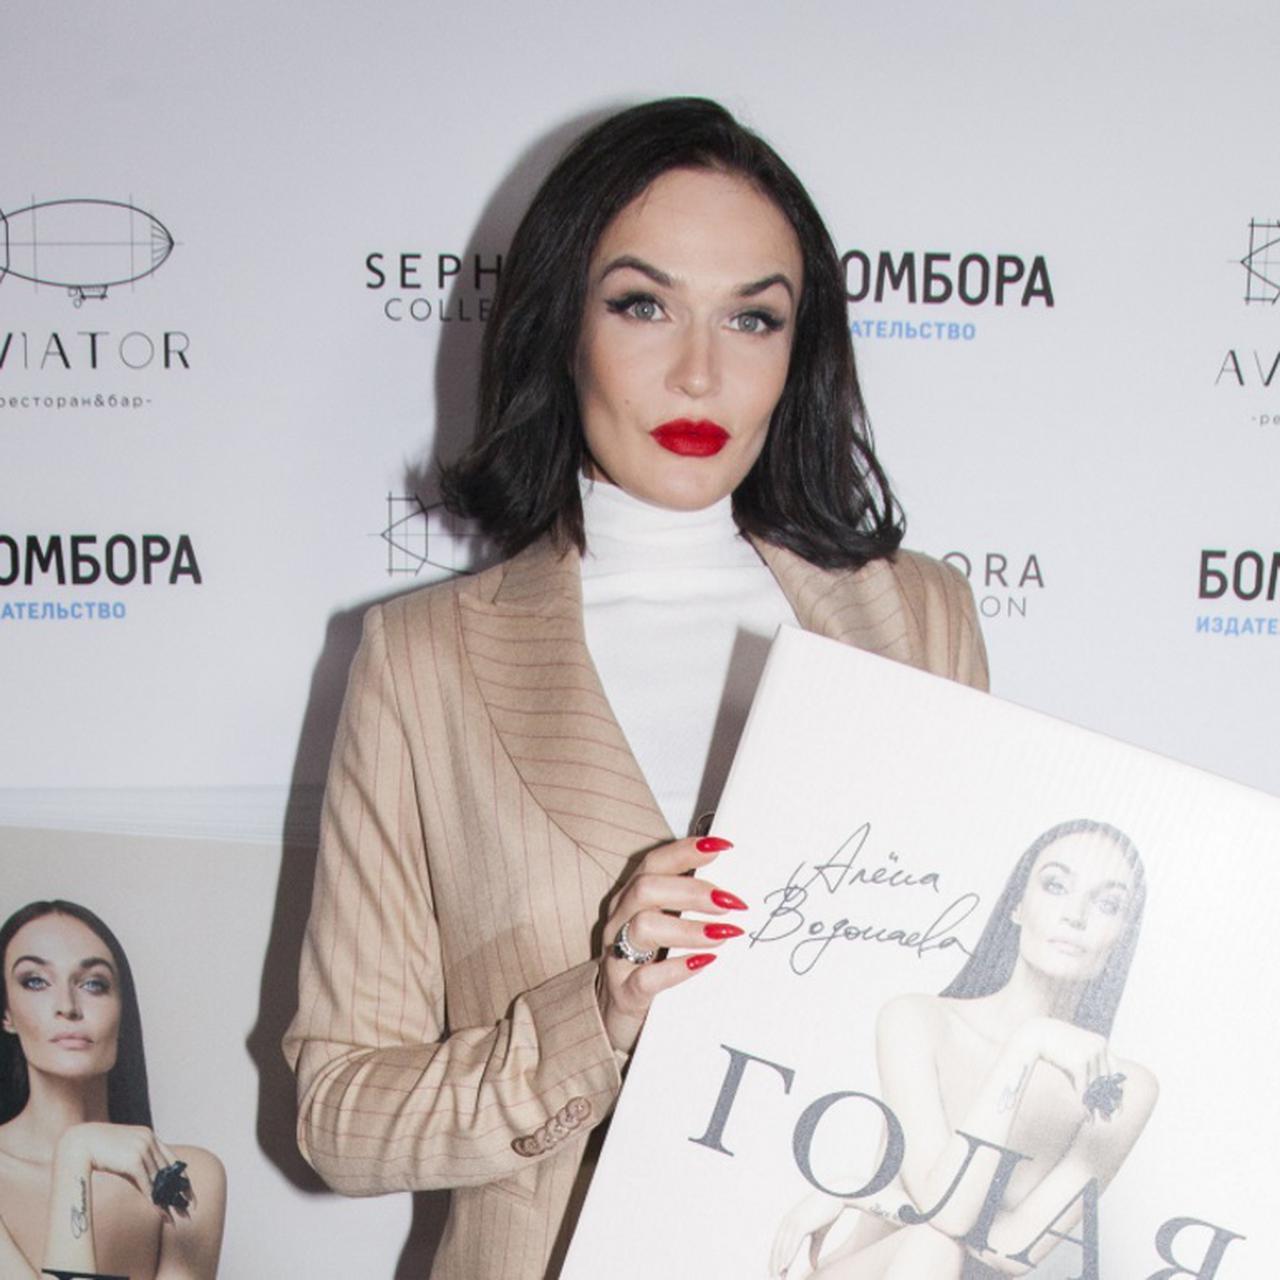 Водонаева пришла на презентацию своей книги «Голая» в стильном брючном  костюме, а Бледанс — в сияющем платье и с бабочками на шее | WMJ.ru